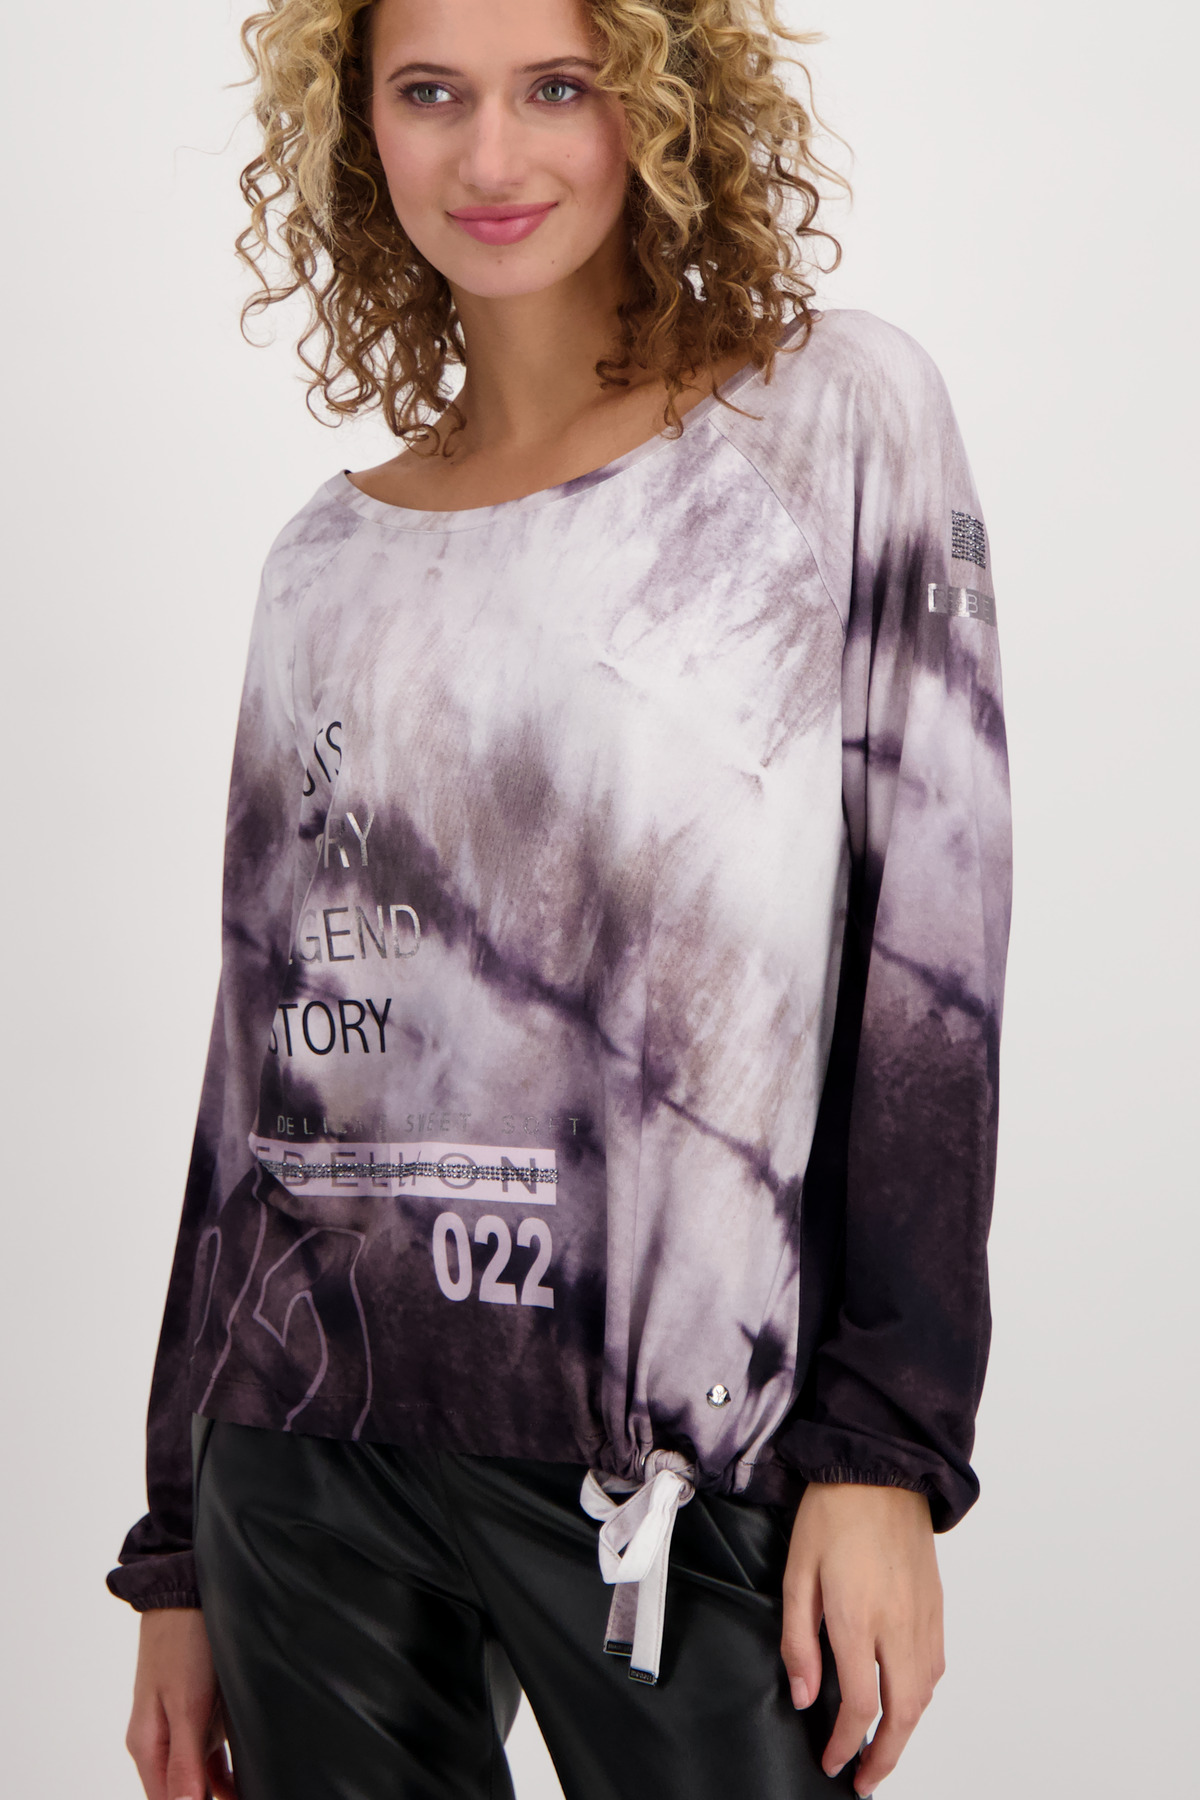 mit weber Allover und elastisches Monari Batik Strass Jersey Print | Shirt mode